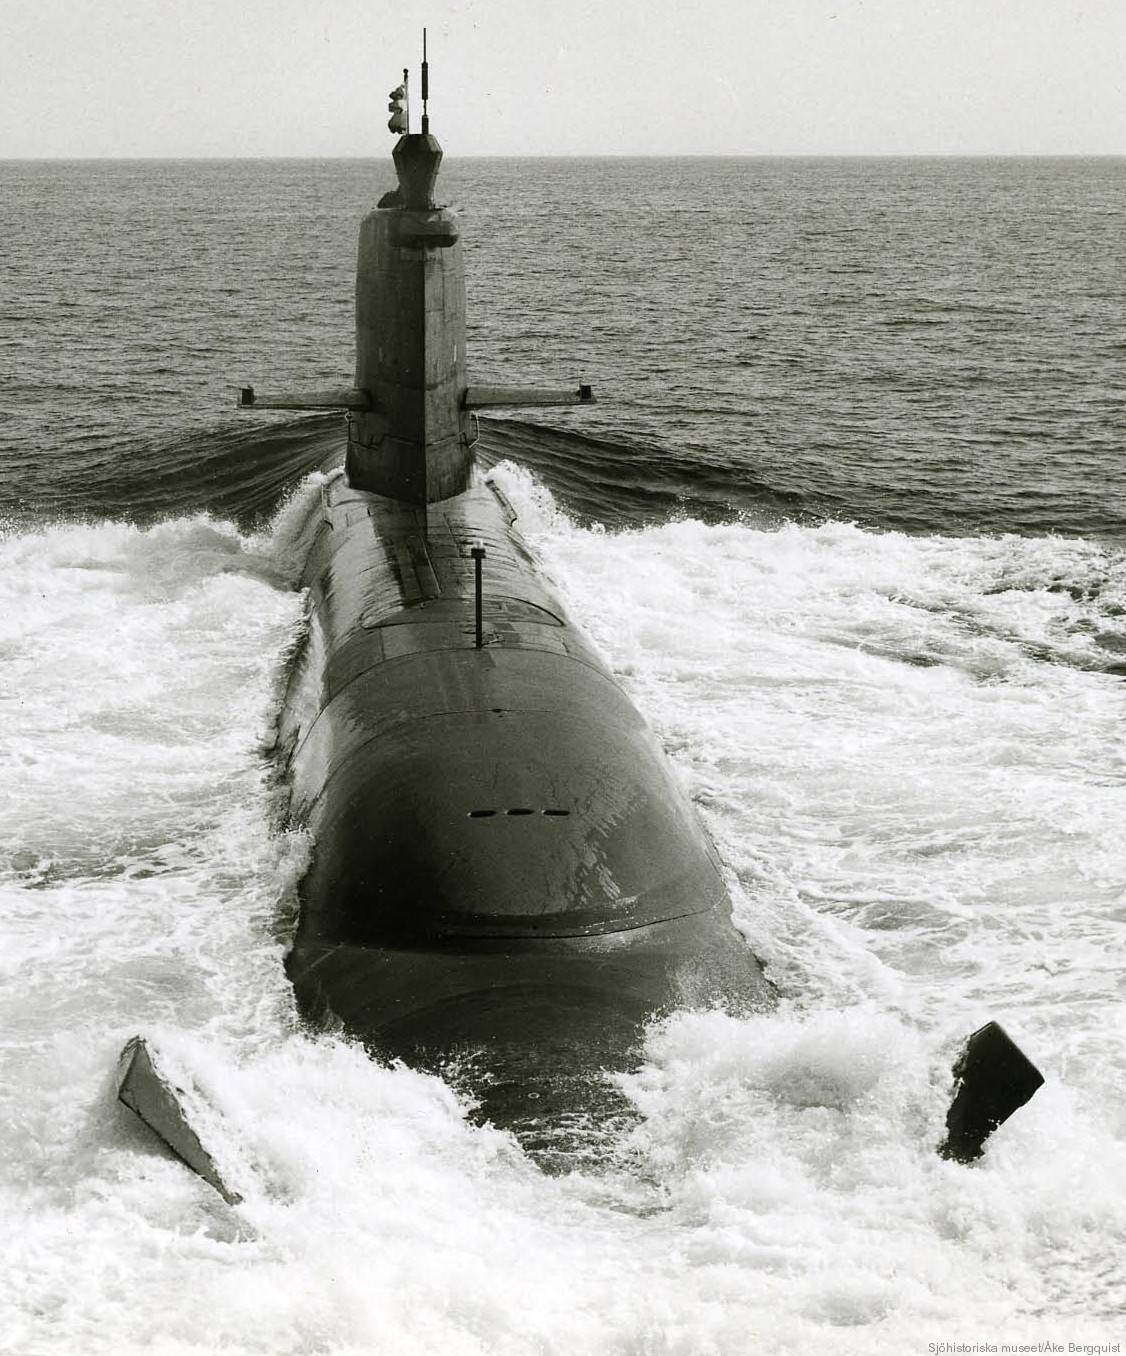 hswms hms sjöhästen shä sjöormen a11 class submarine ssk swedish navy svenska marinen försvarsmakten 06